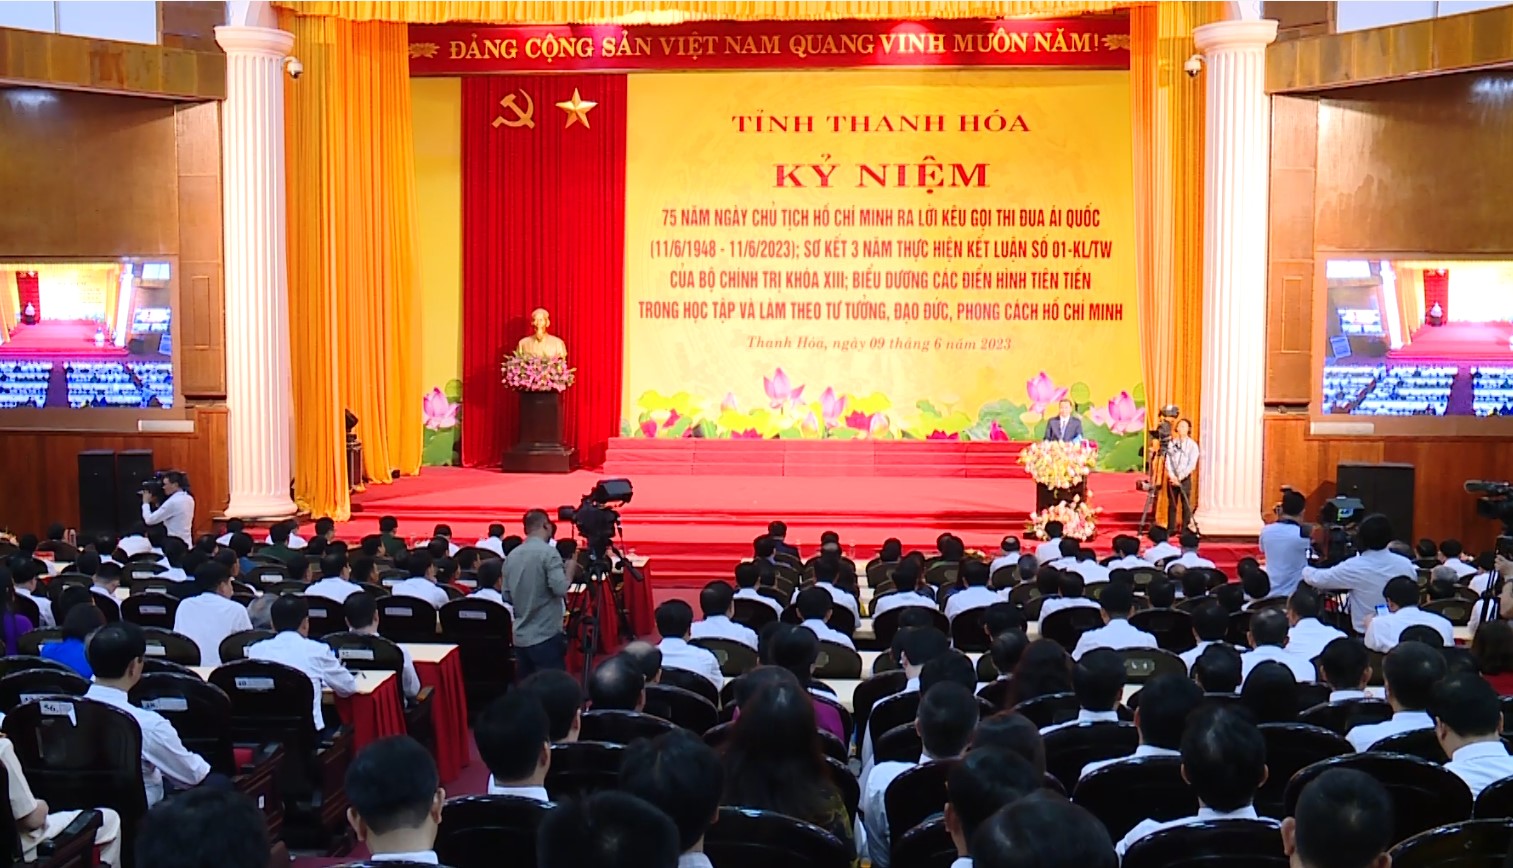 Kỷ niệm 75 năm ngày Chủ tịch Hồ Chí Minh ra lời kêu gọi thi đua yêu nước - Ảnh 2.